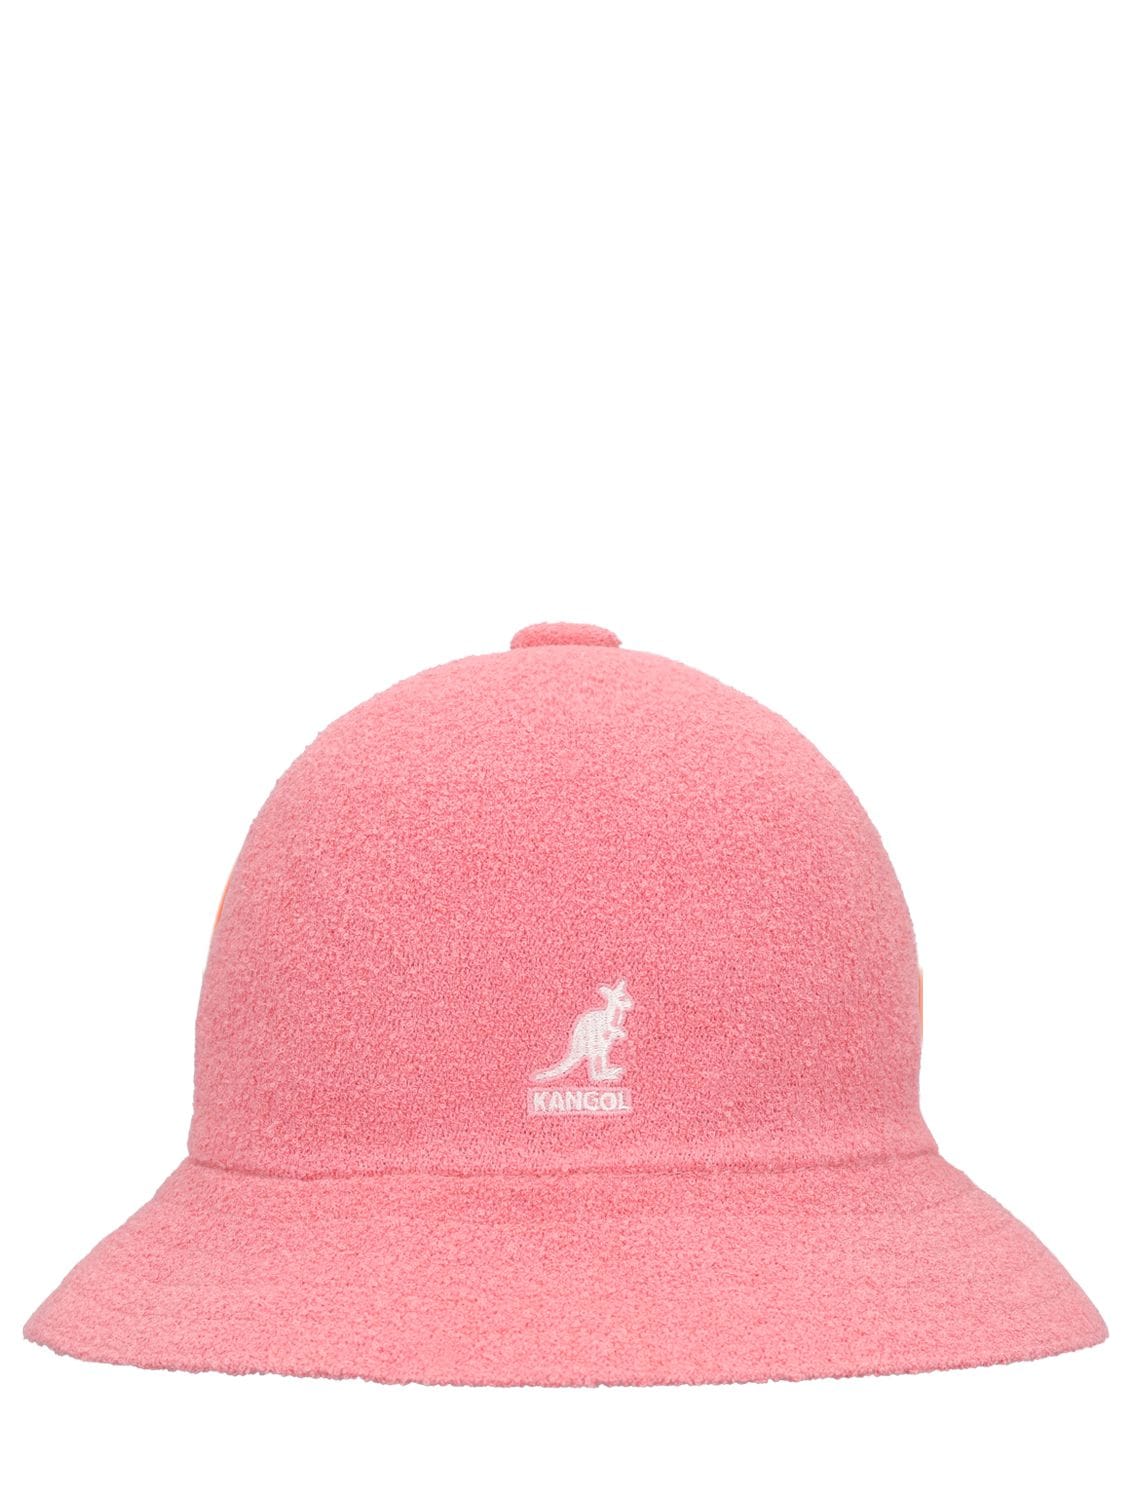 Kangol Bermuda渔夫帽 In Pepto Pink